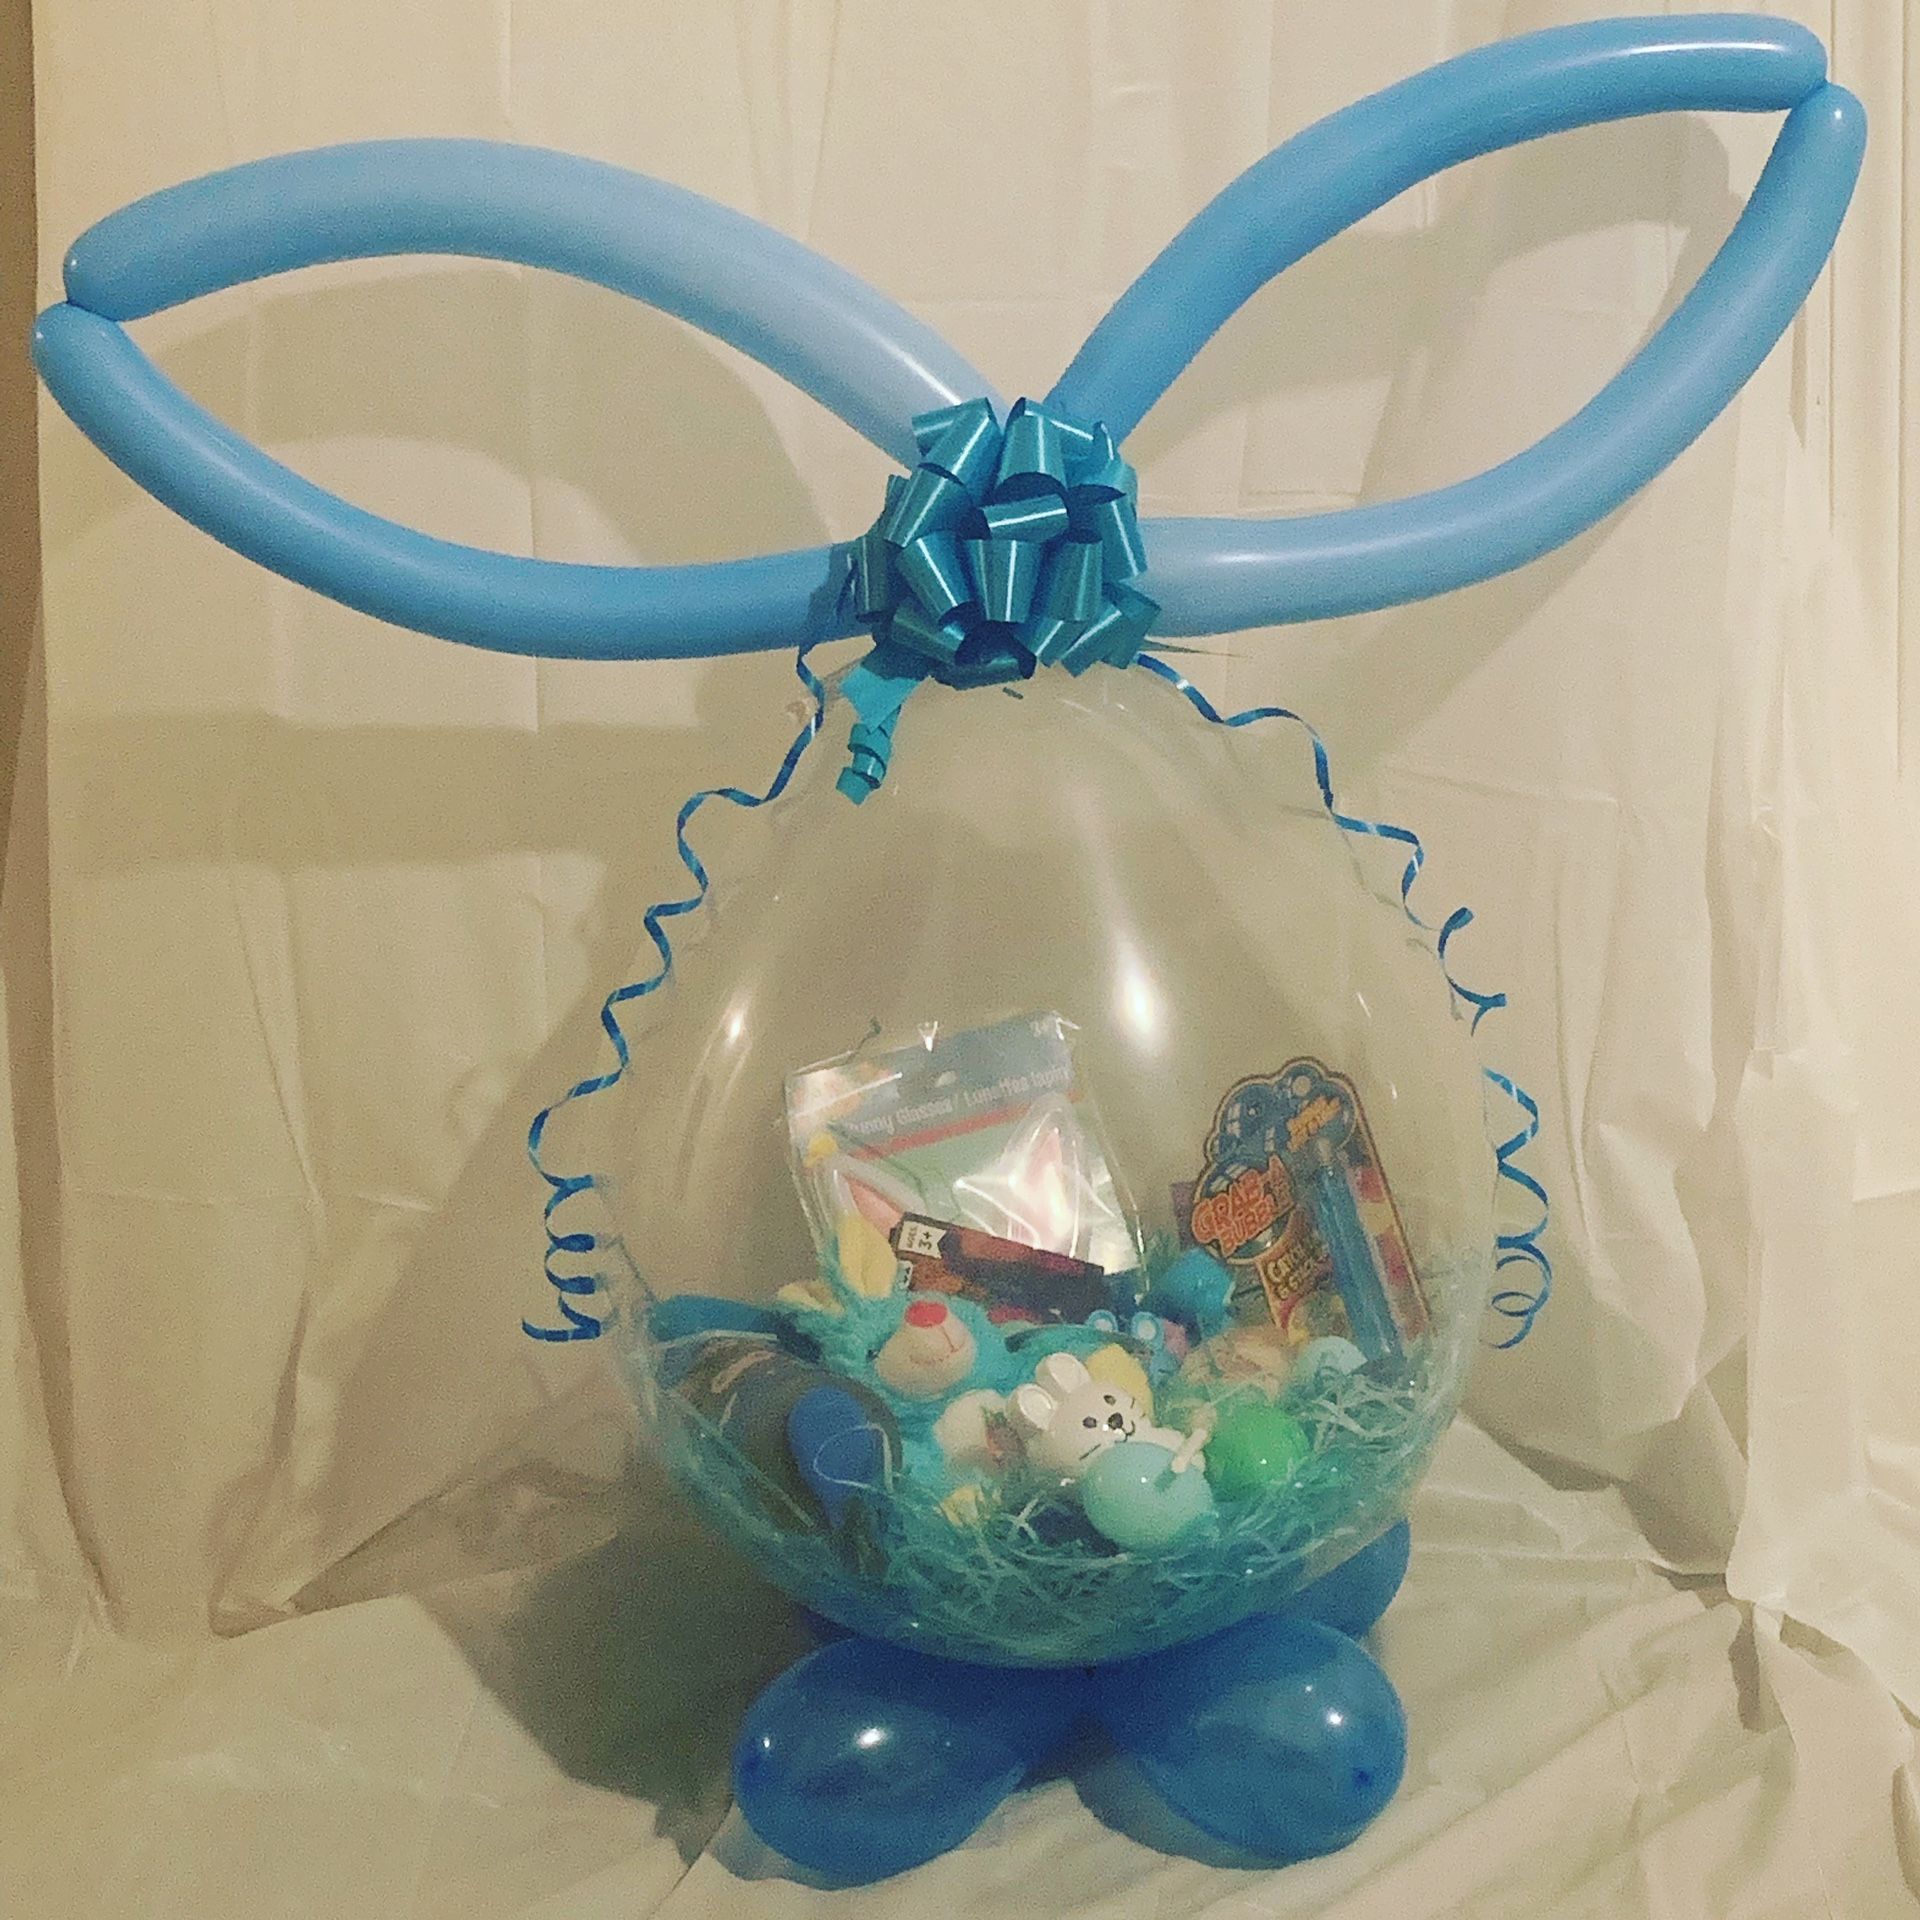 Jream’s Balloon Boutique